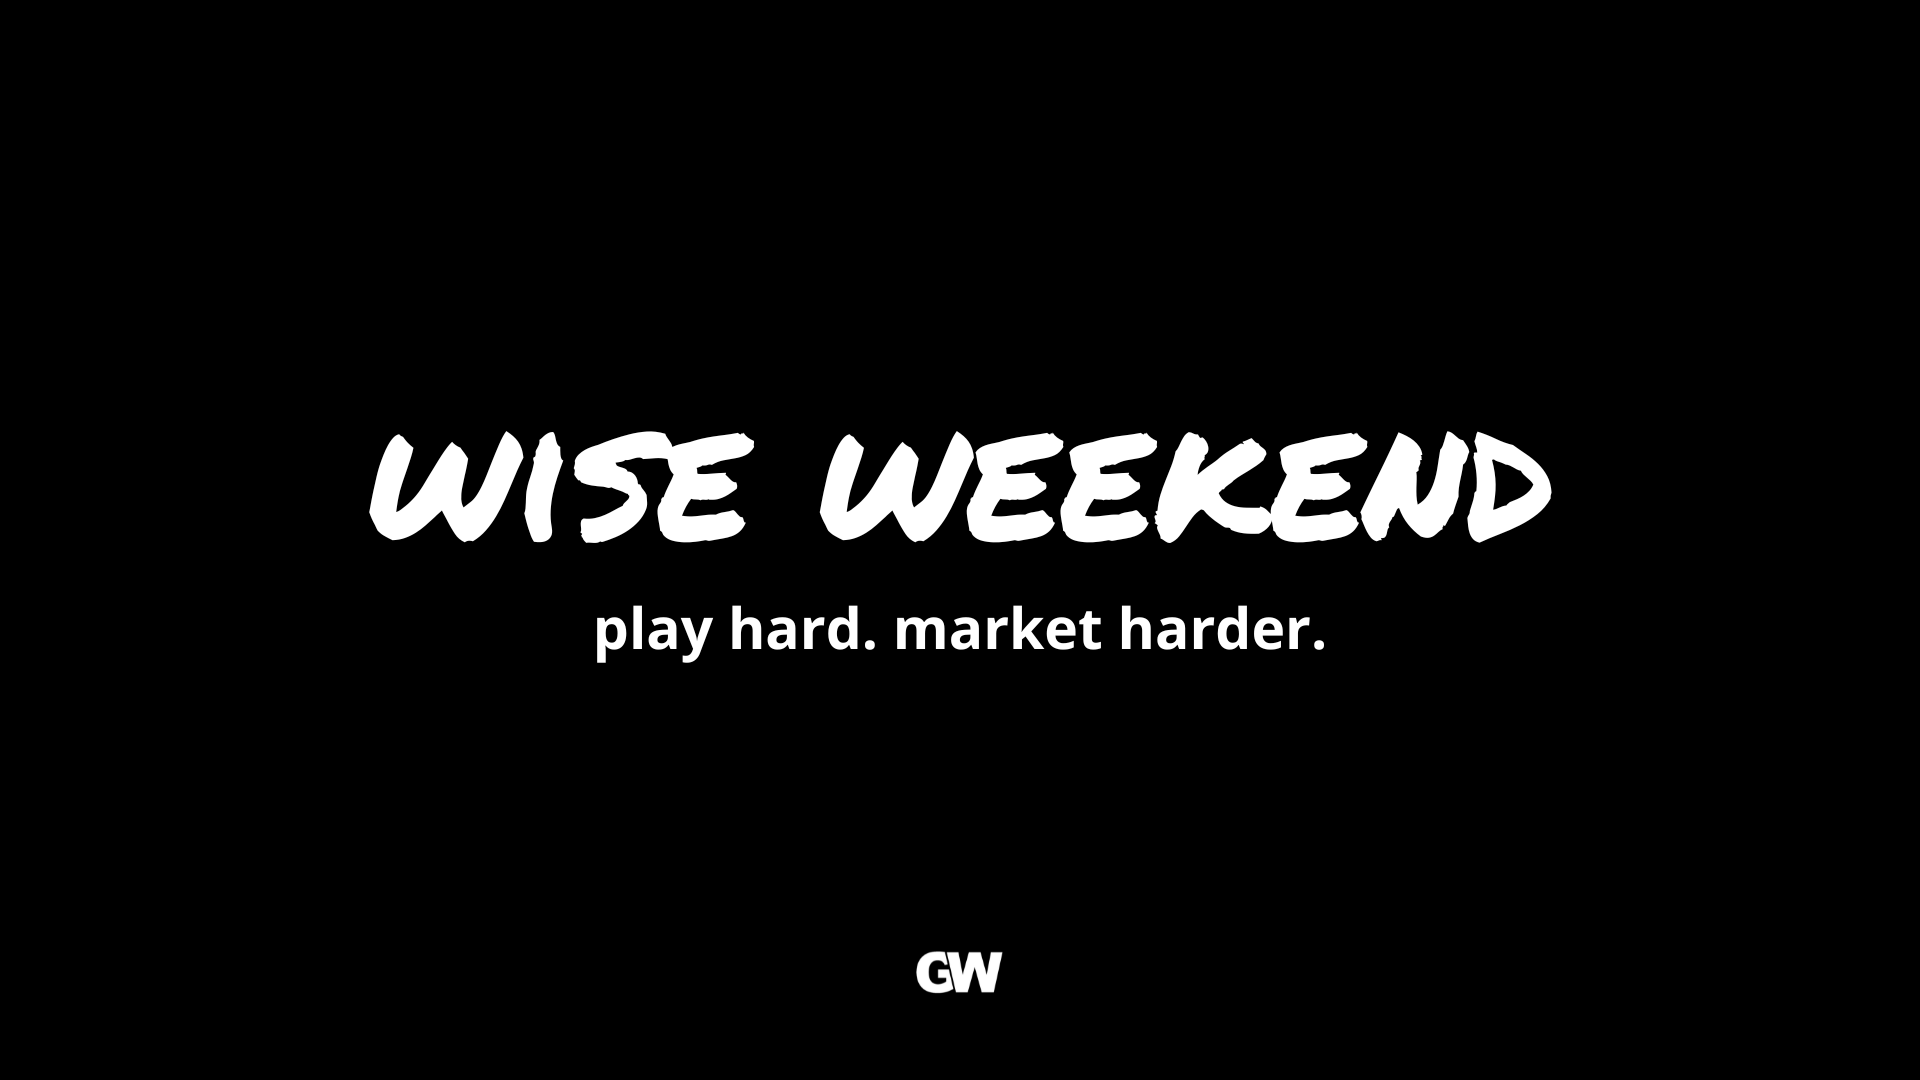 Wise Weekend